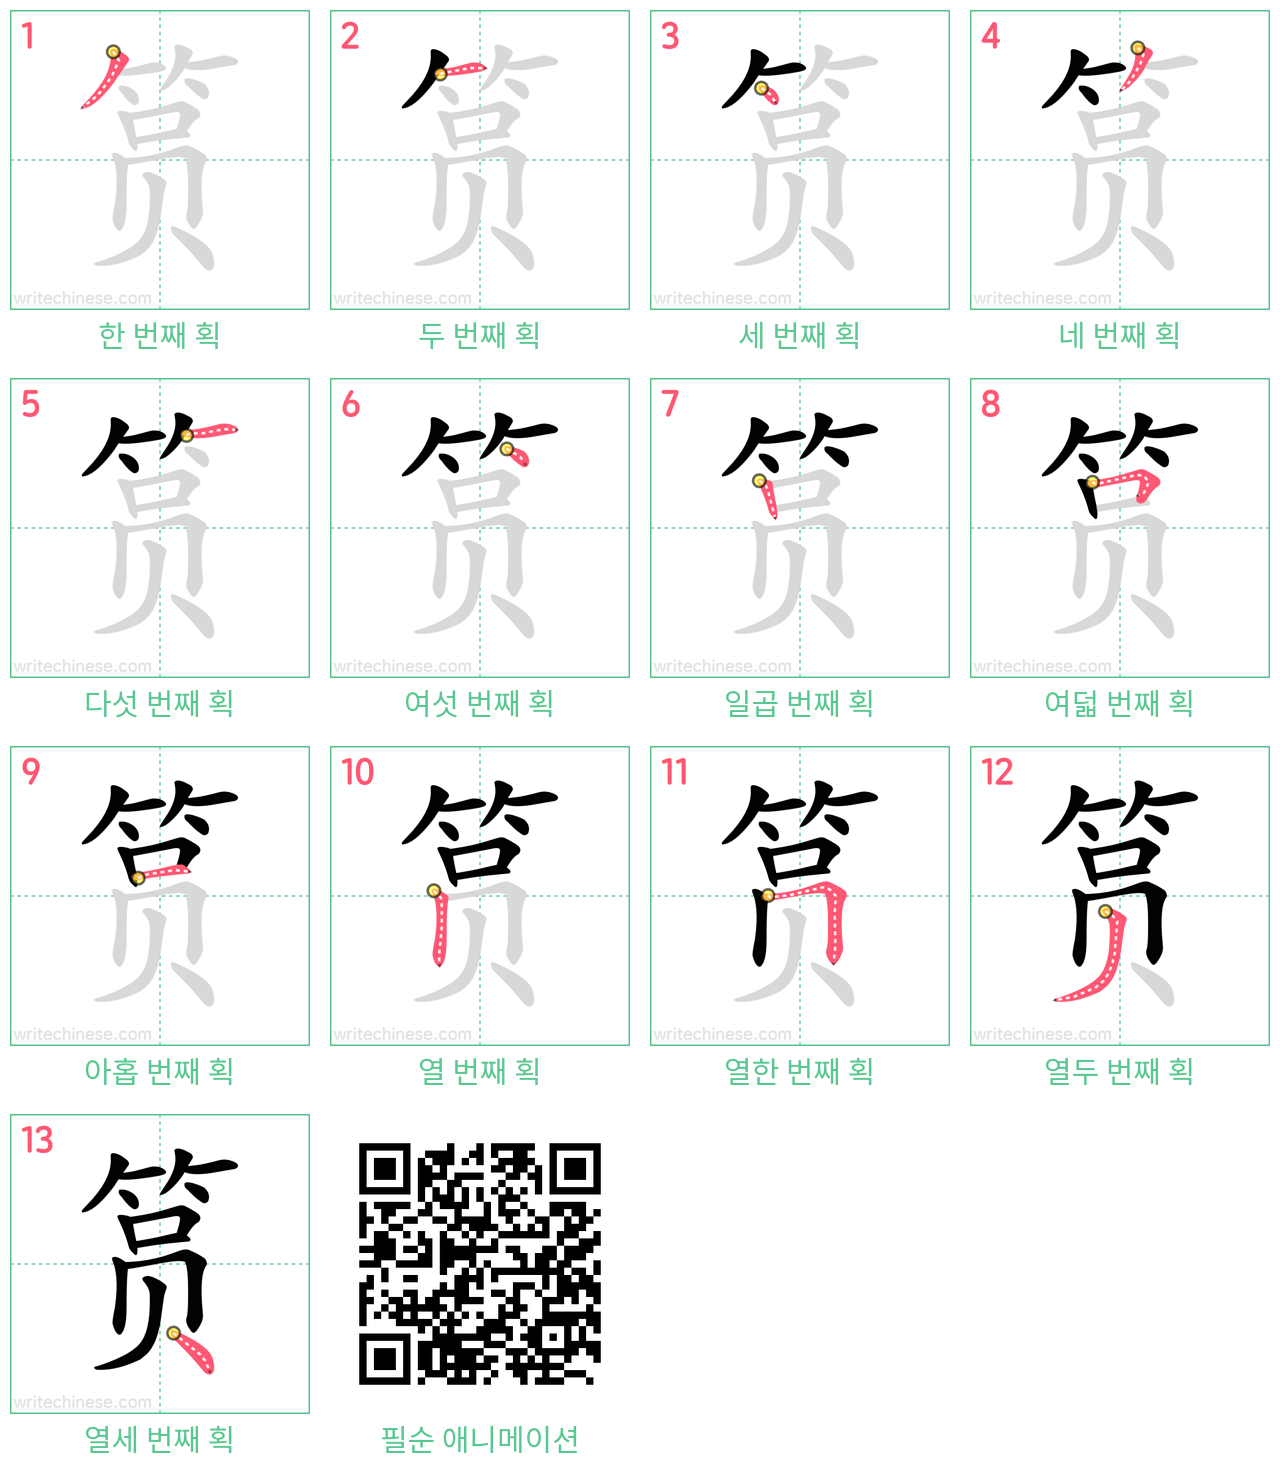 筼 step-by-step stroke order diagrams